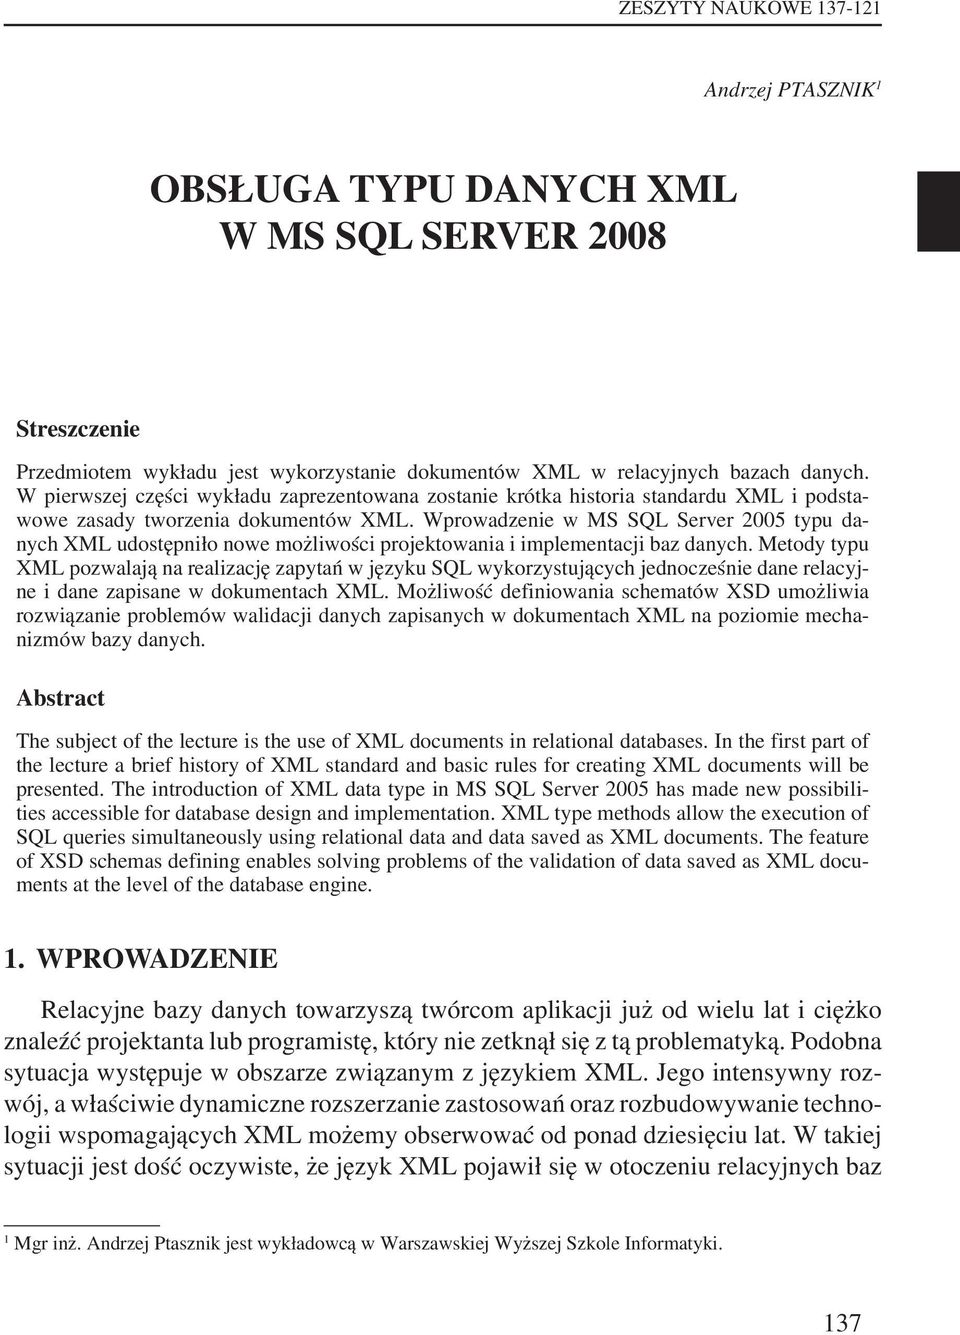 Wprowadzenie w MS SQL Server 2005 typu danych XML udostępniło nowe możliwości projektowania i implementacji baz danych.